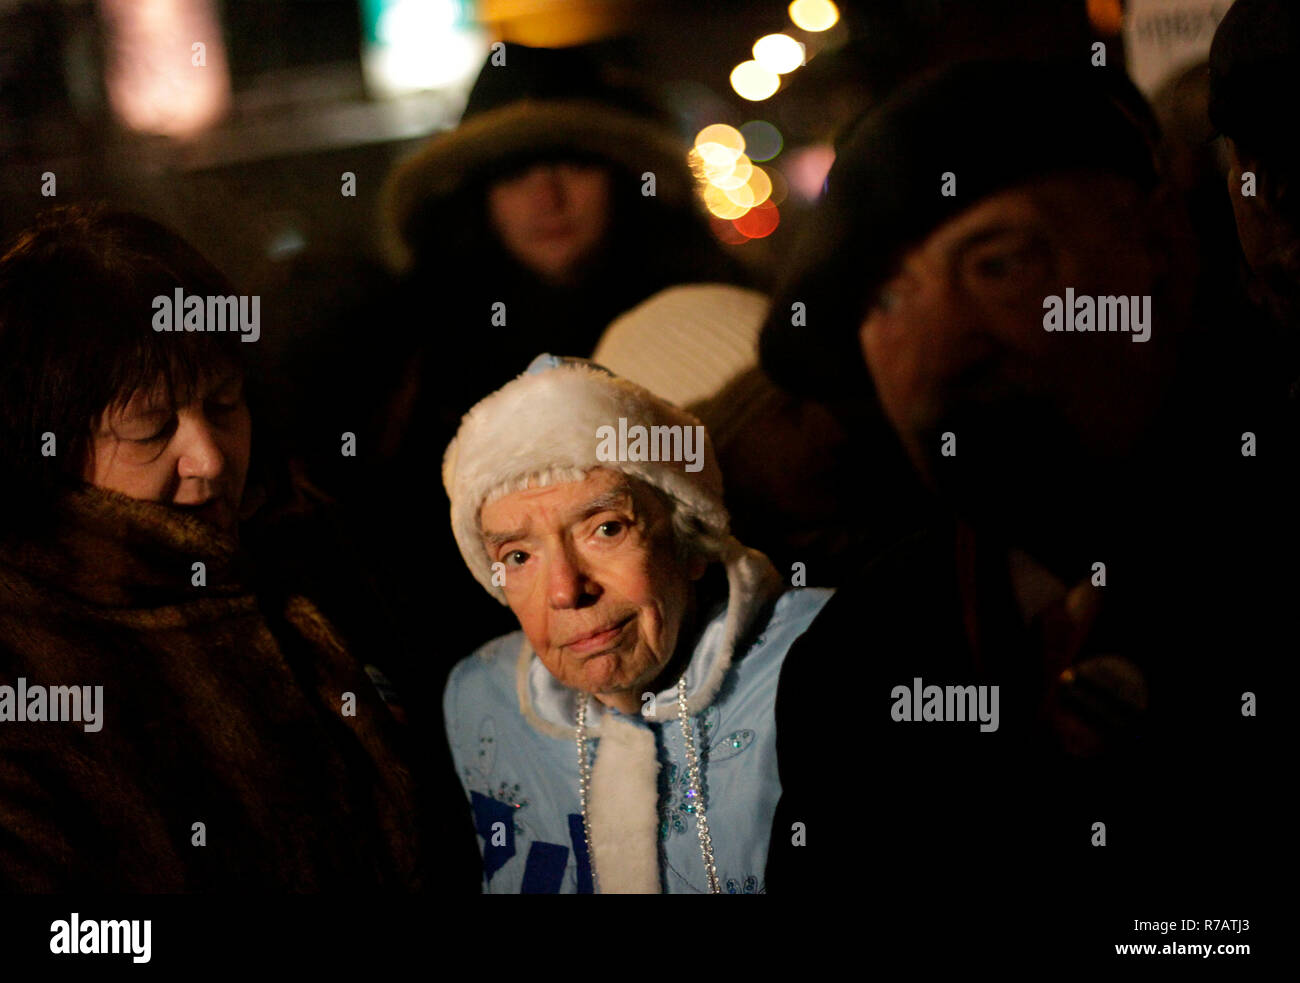 Mosca, Russia. 31 dic 2010. Umano russo-attivista per i diritti Lyudmila Alexeyeva, 83, sorge in un rally a Mosca. Sommossa la polizia ha arrestato decine di attivisti dell'opposizione nel centro di Mosca in un unsanctioned rally per difendere il diritto alla libertà di riunione. Credito: Diana Markosian/ZUMAPRESS.com/Alamy Live News Foto Stock